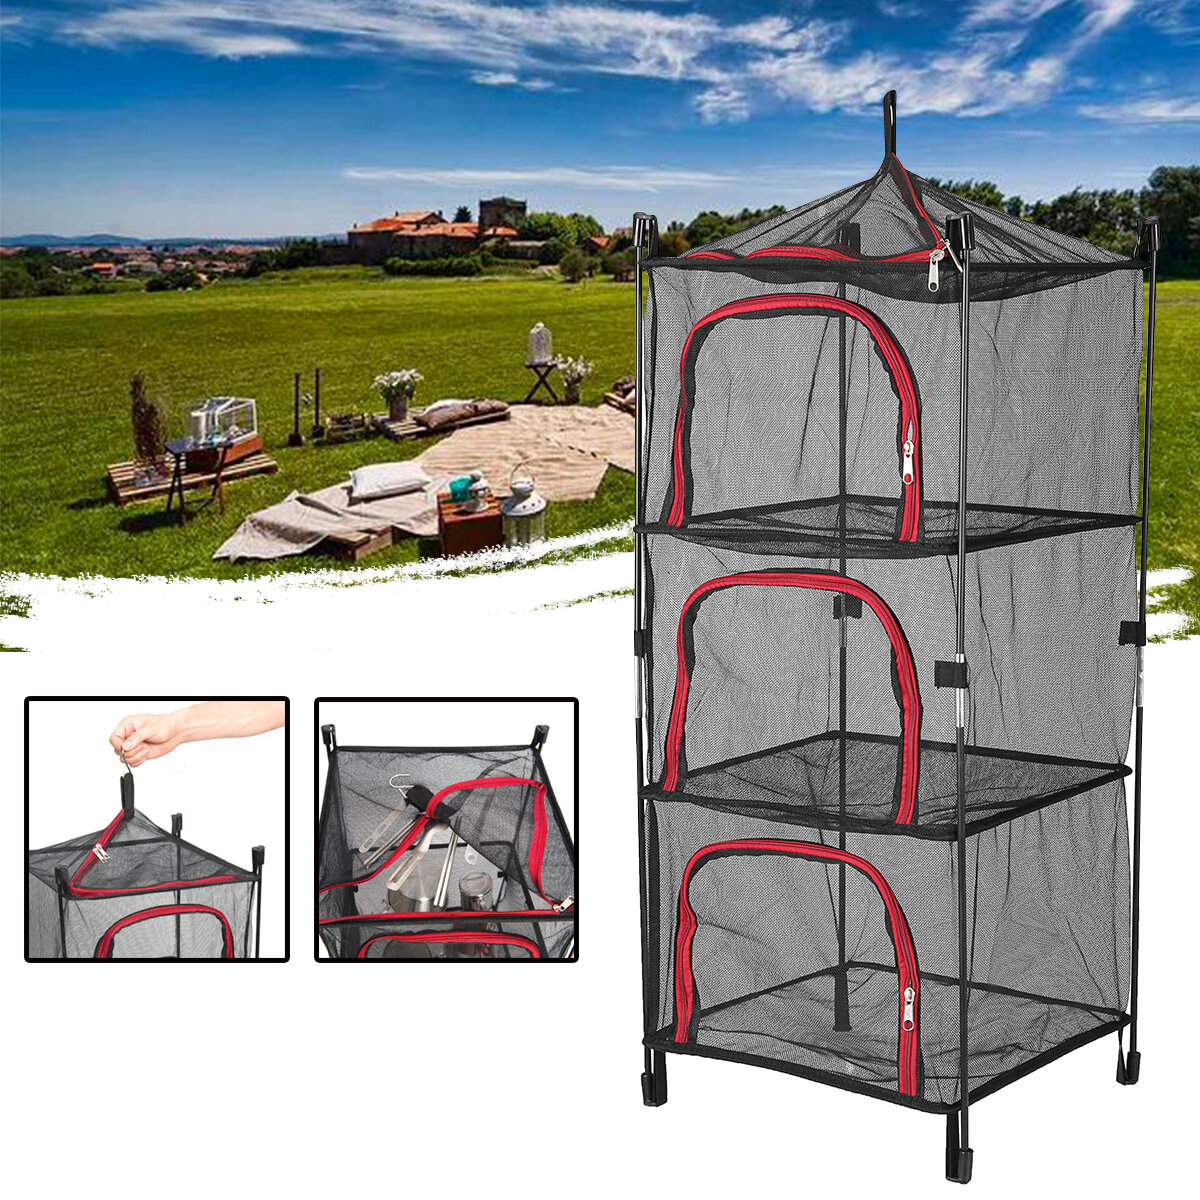 Campingdroognet met 4 lagen opvouwbaar, hangend, gaasplank om serviesgoed te drogen, mand voor het opbergen van voedsel voor BBQ-tafelgerei en groenten